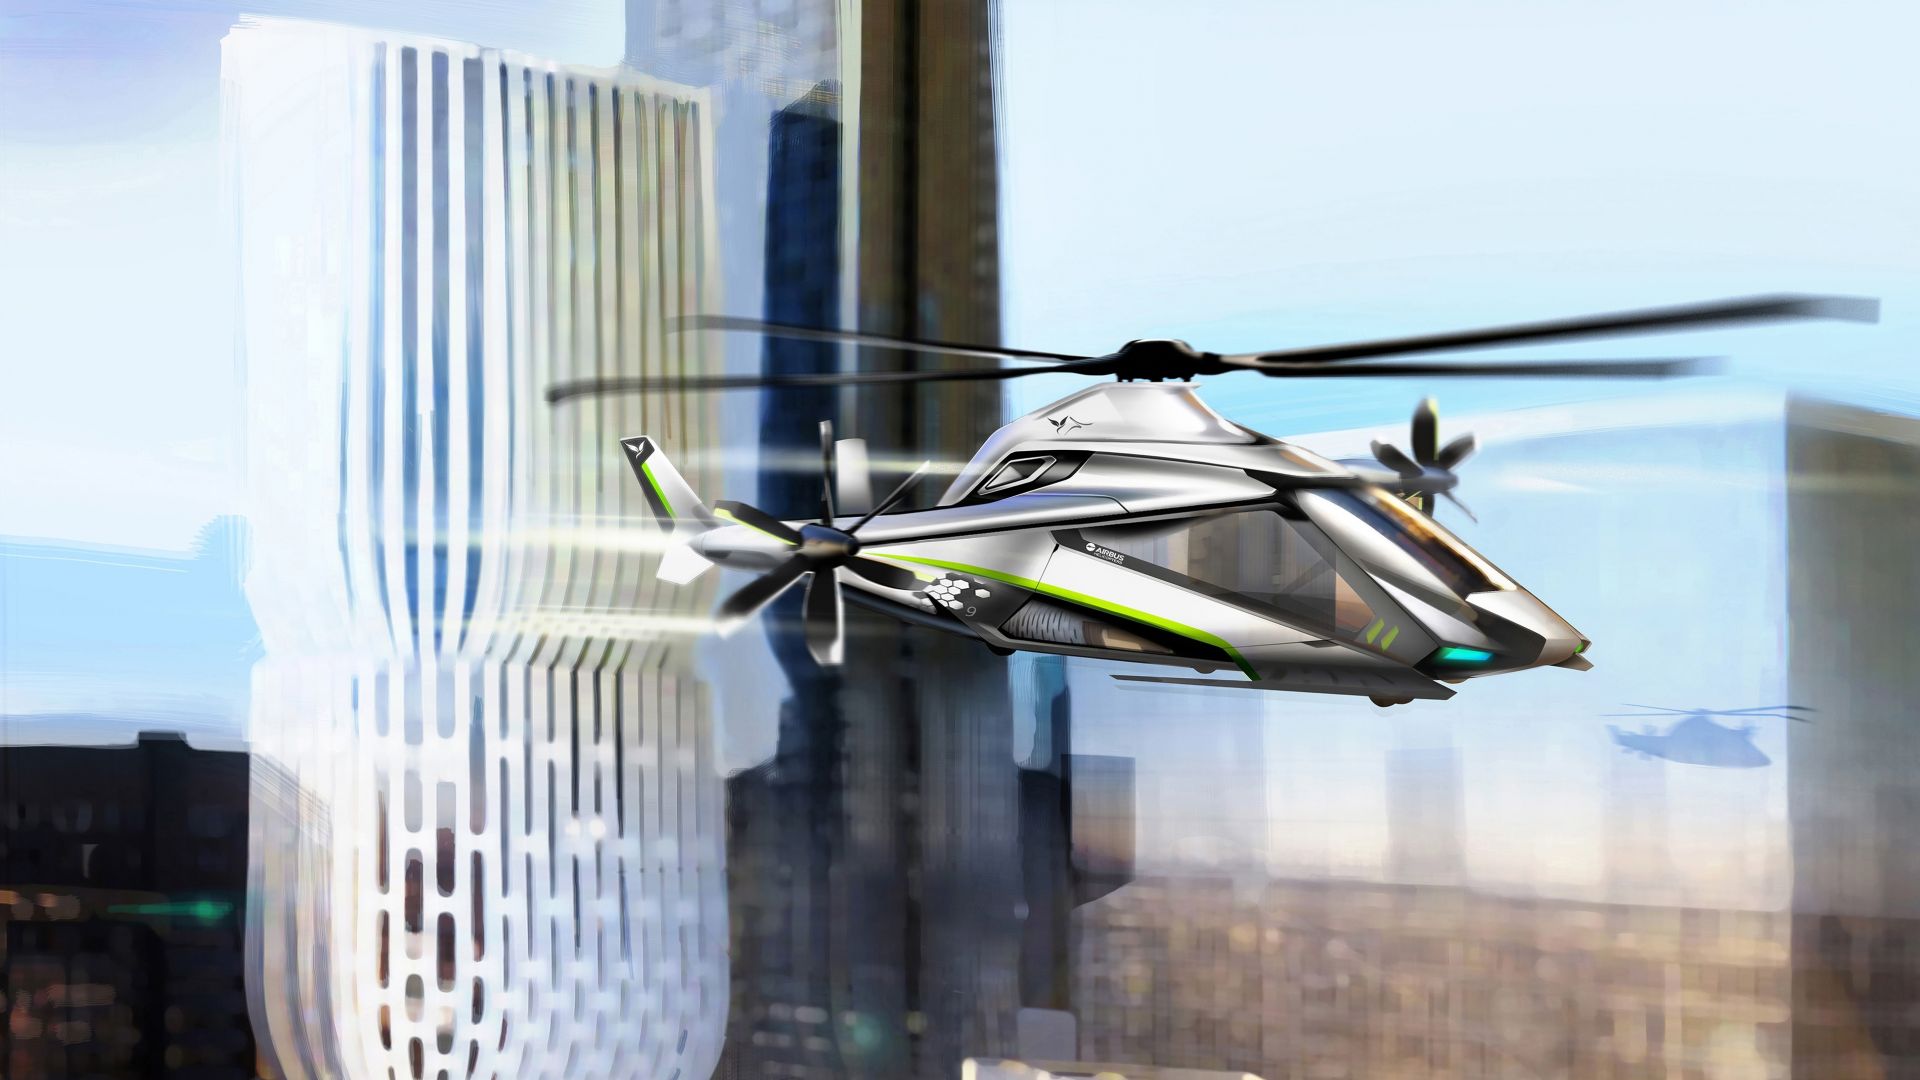 Клин скай 2, Вертолет, скорость, концепт, Clean Sky 2, Helicopter, speed, concept (horizontal)